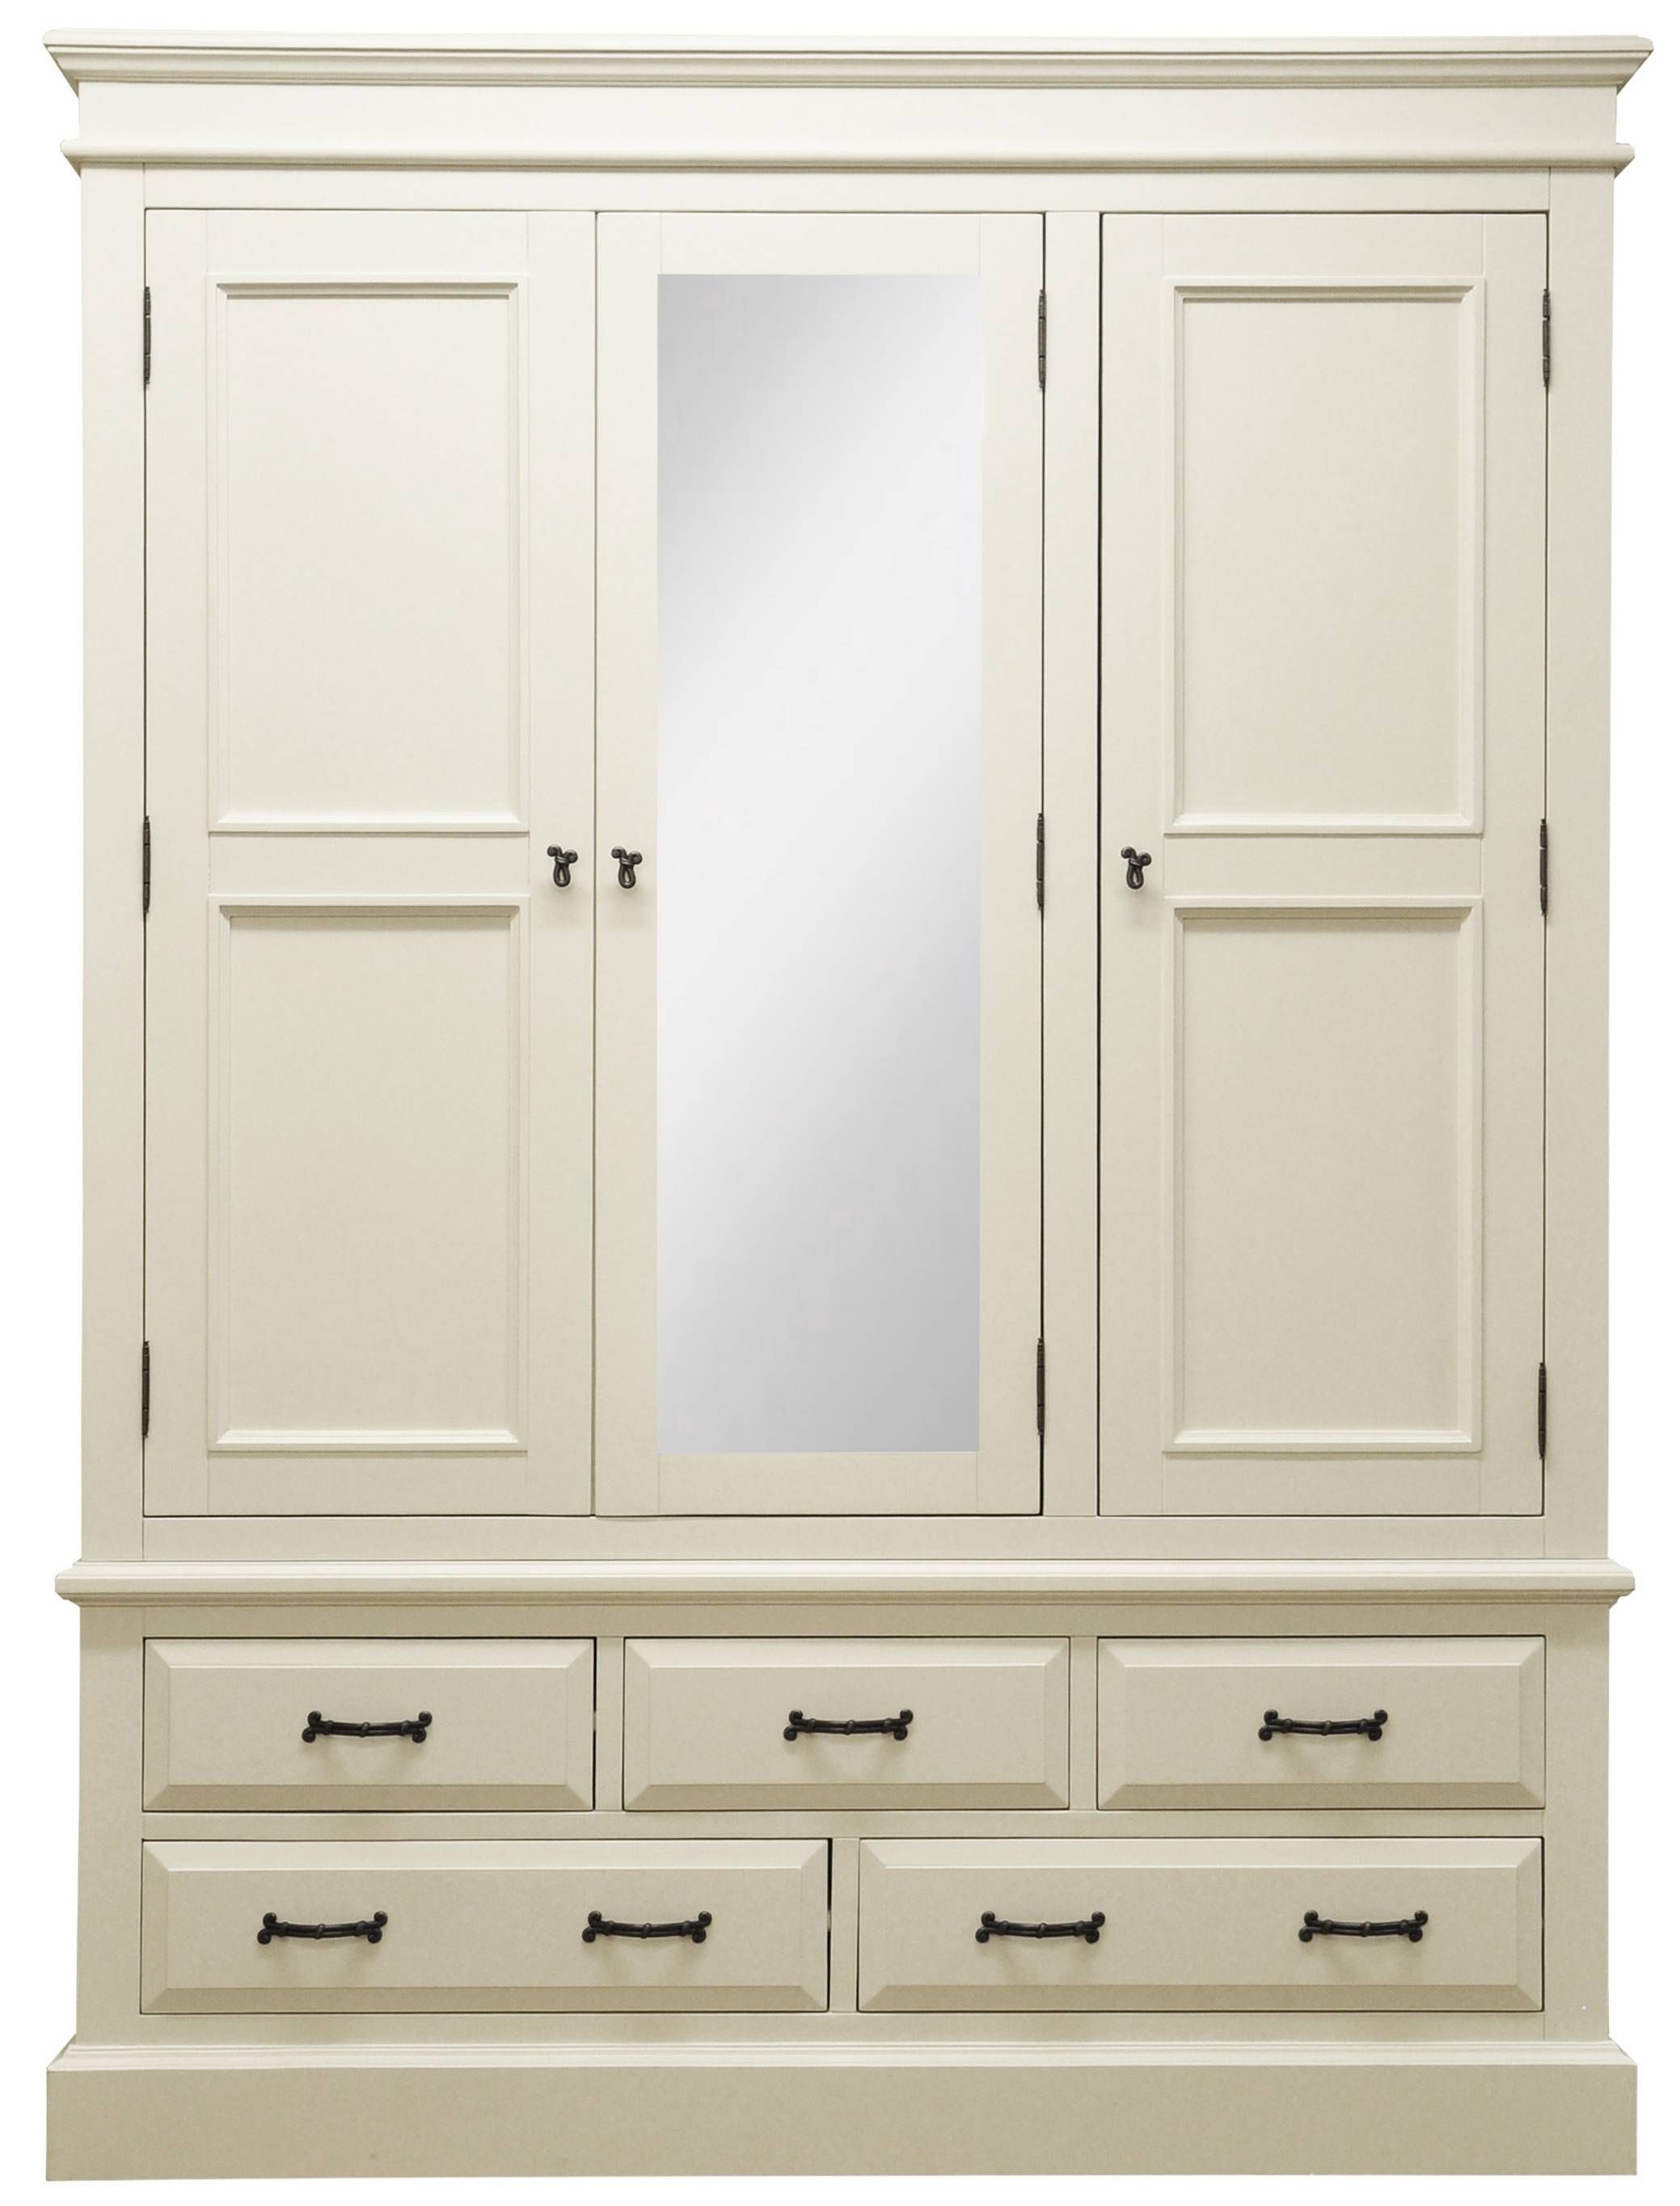 Wardrobes : Henleaze 5 Drawer Painted Wardrobe With Mirrorhenleaze Regarding White 3 Door Wardrobes With Mirror (View 15 of 15)